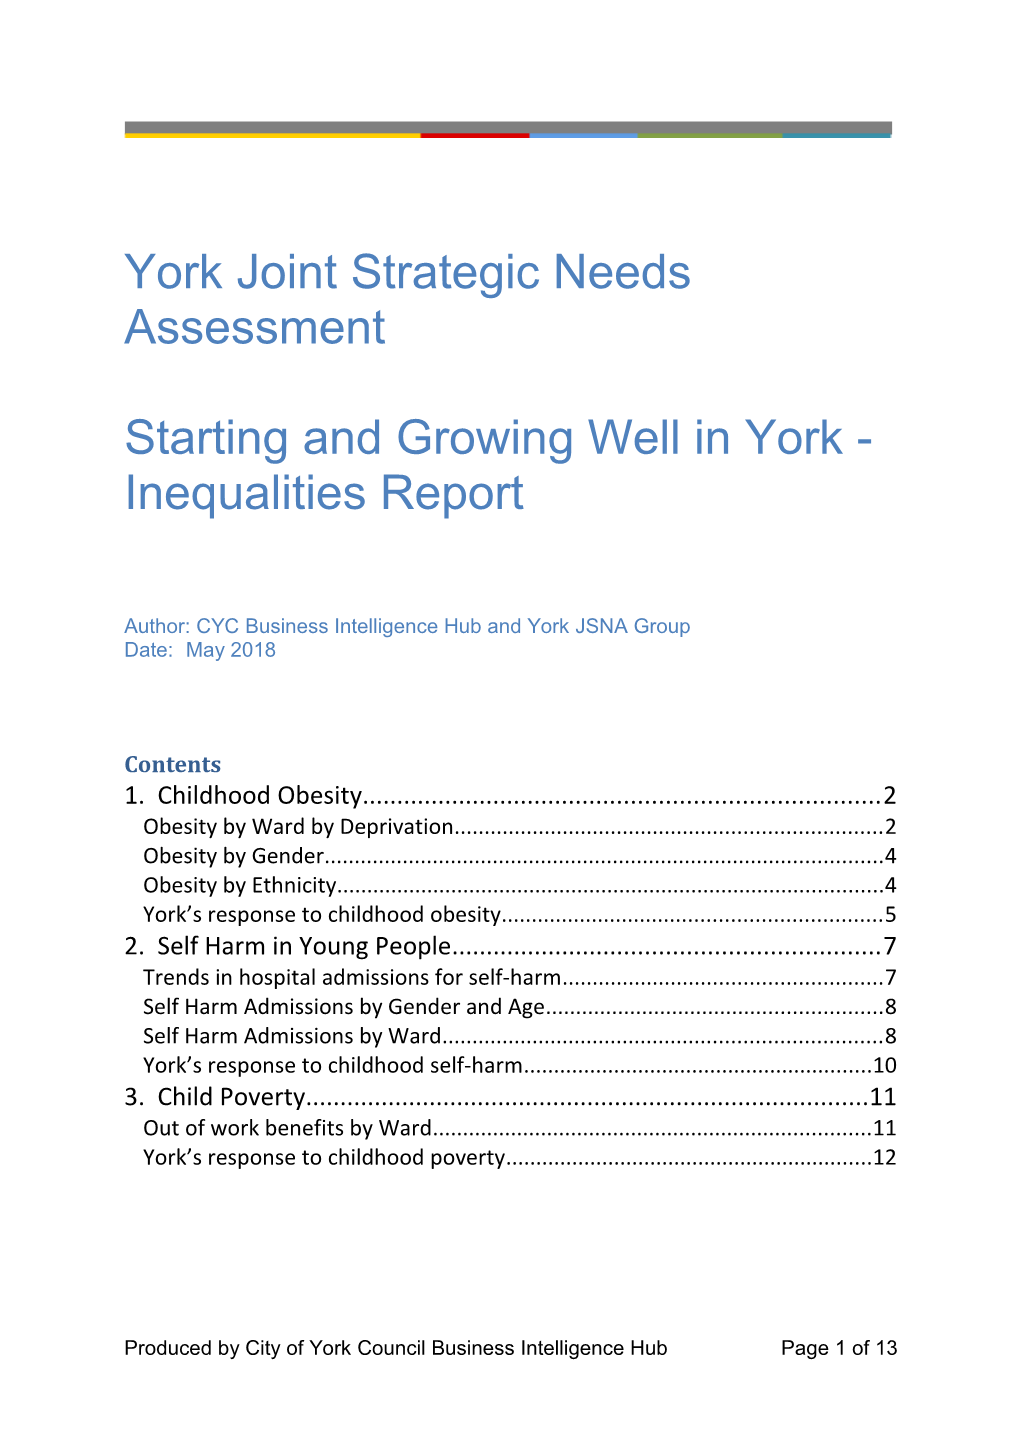 York Joint Strategic Needs Assessment